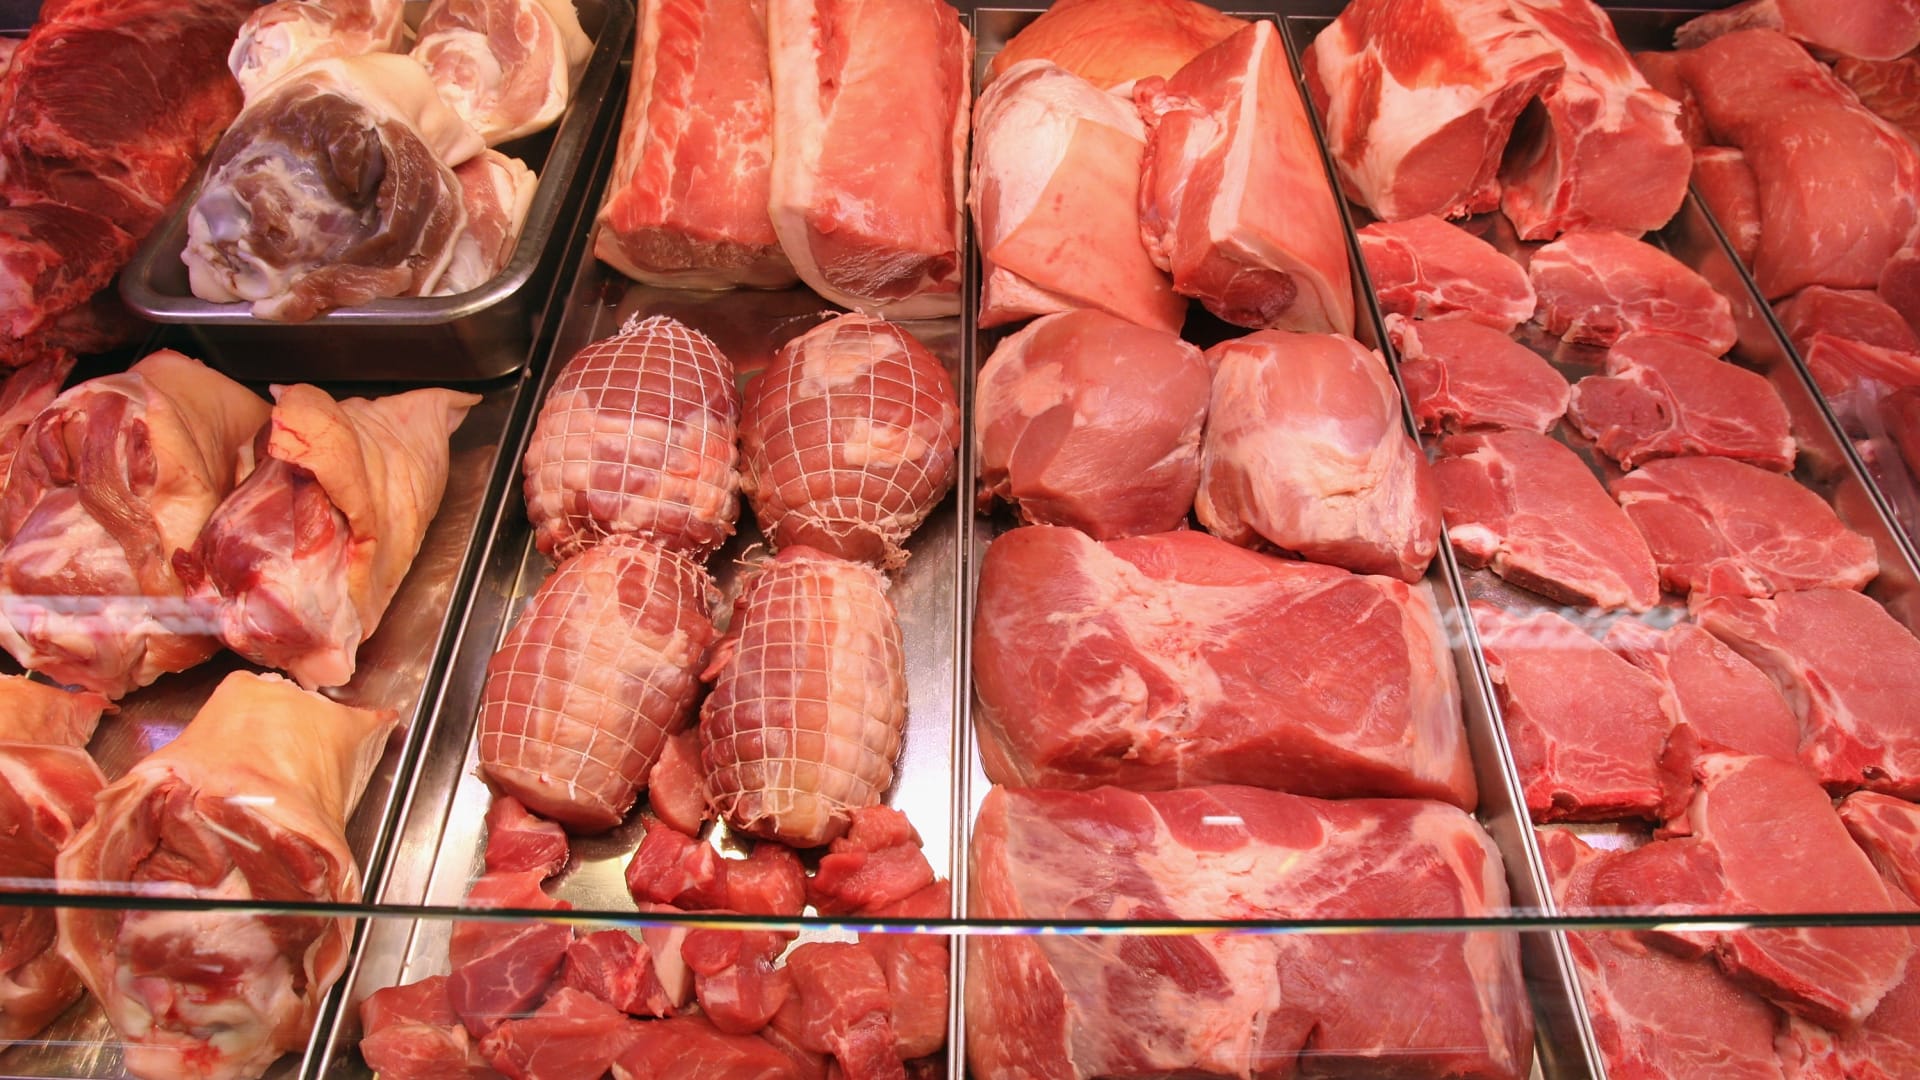 الدجاج بدلاً من اللحم البقري.. إليك بدائل غذائية تفيد صحتك والبيئة في الوقت ذاته